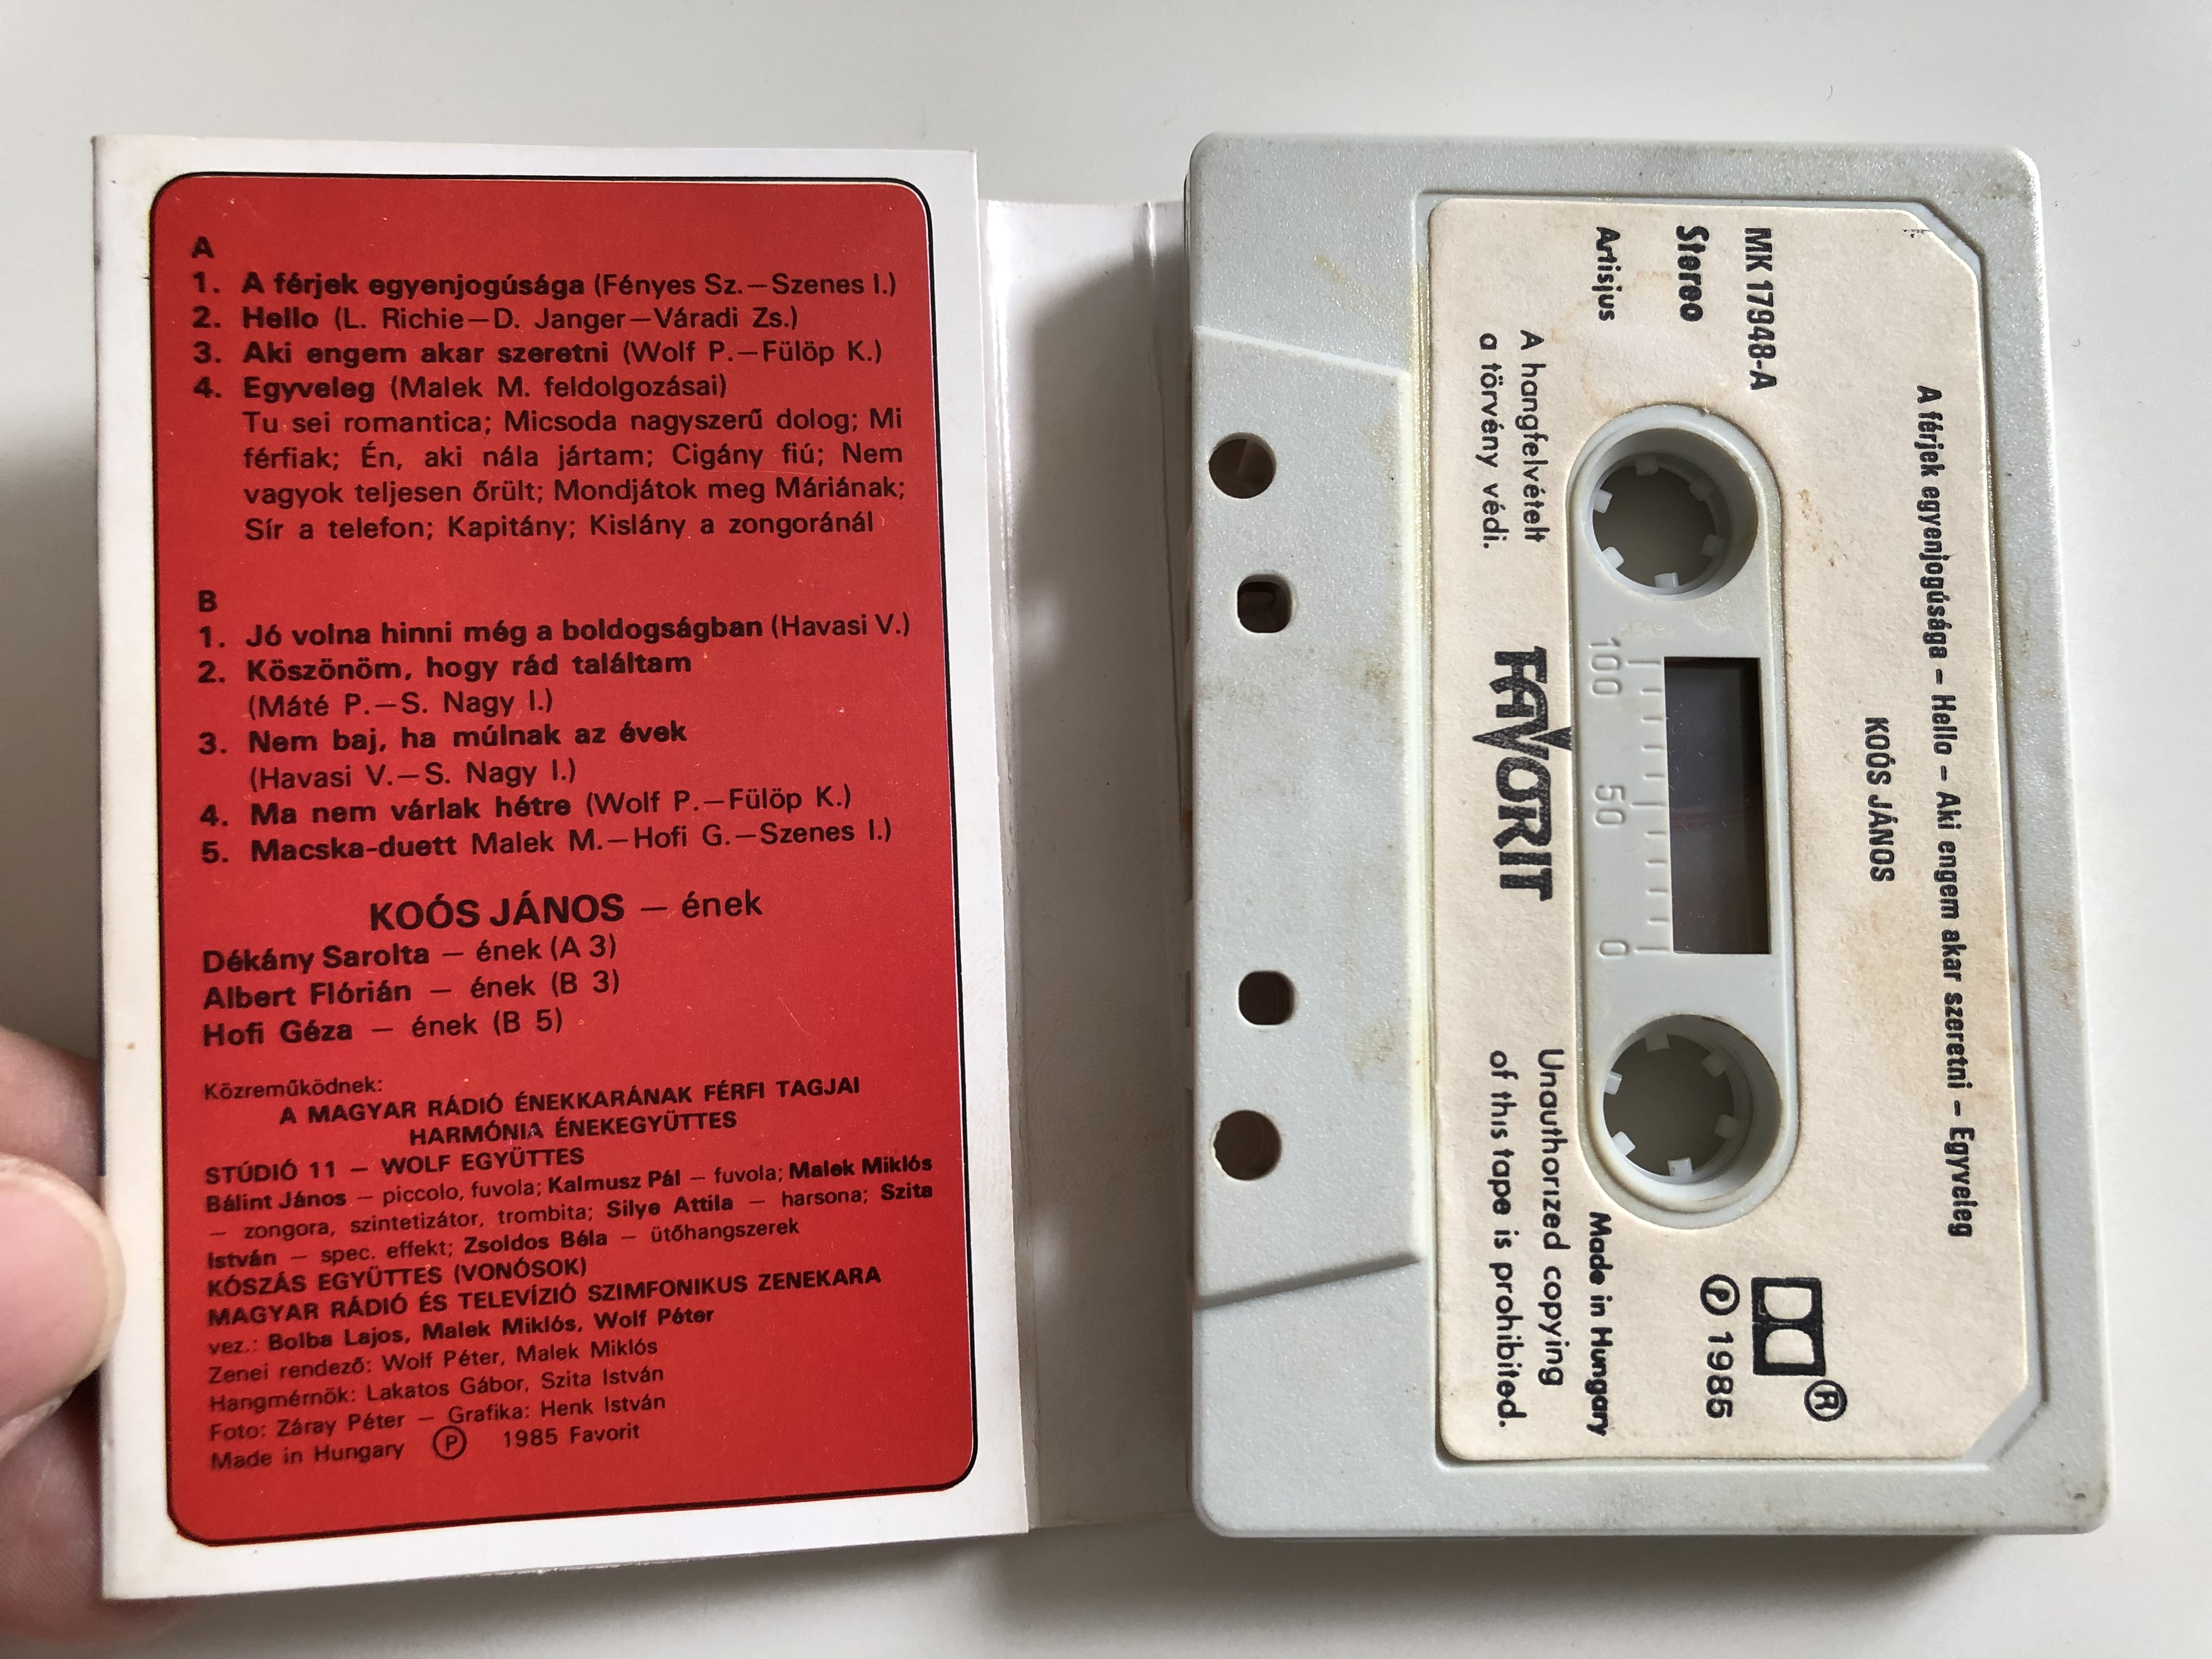 ko-s-j-nos-jubileum-favorit-cassette-stereo-mk-17948-2-.jpg